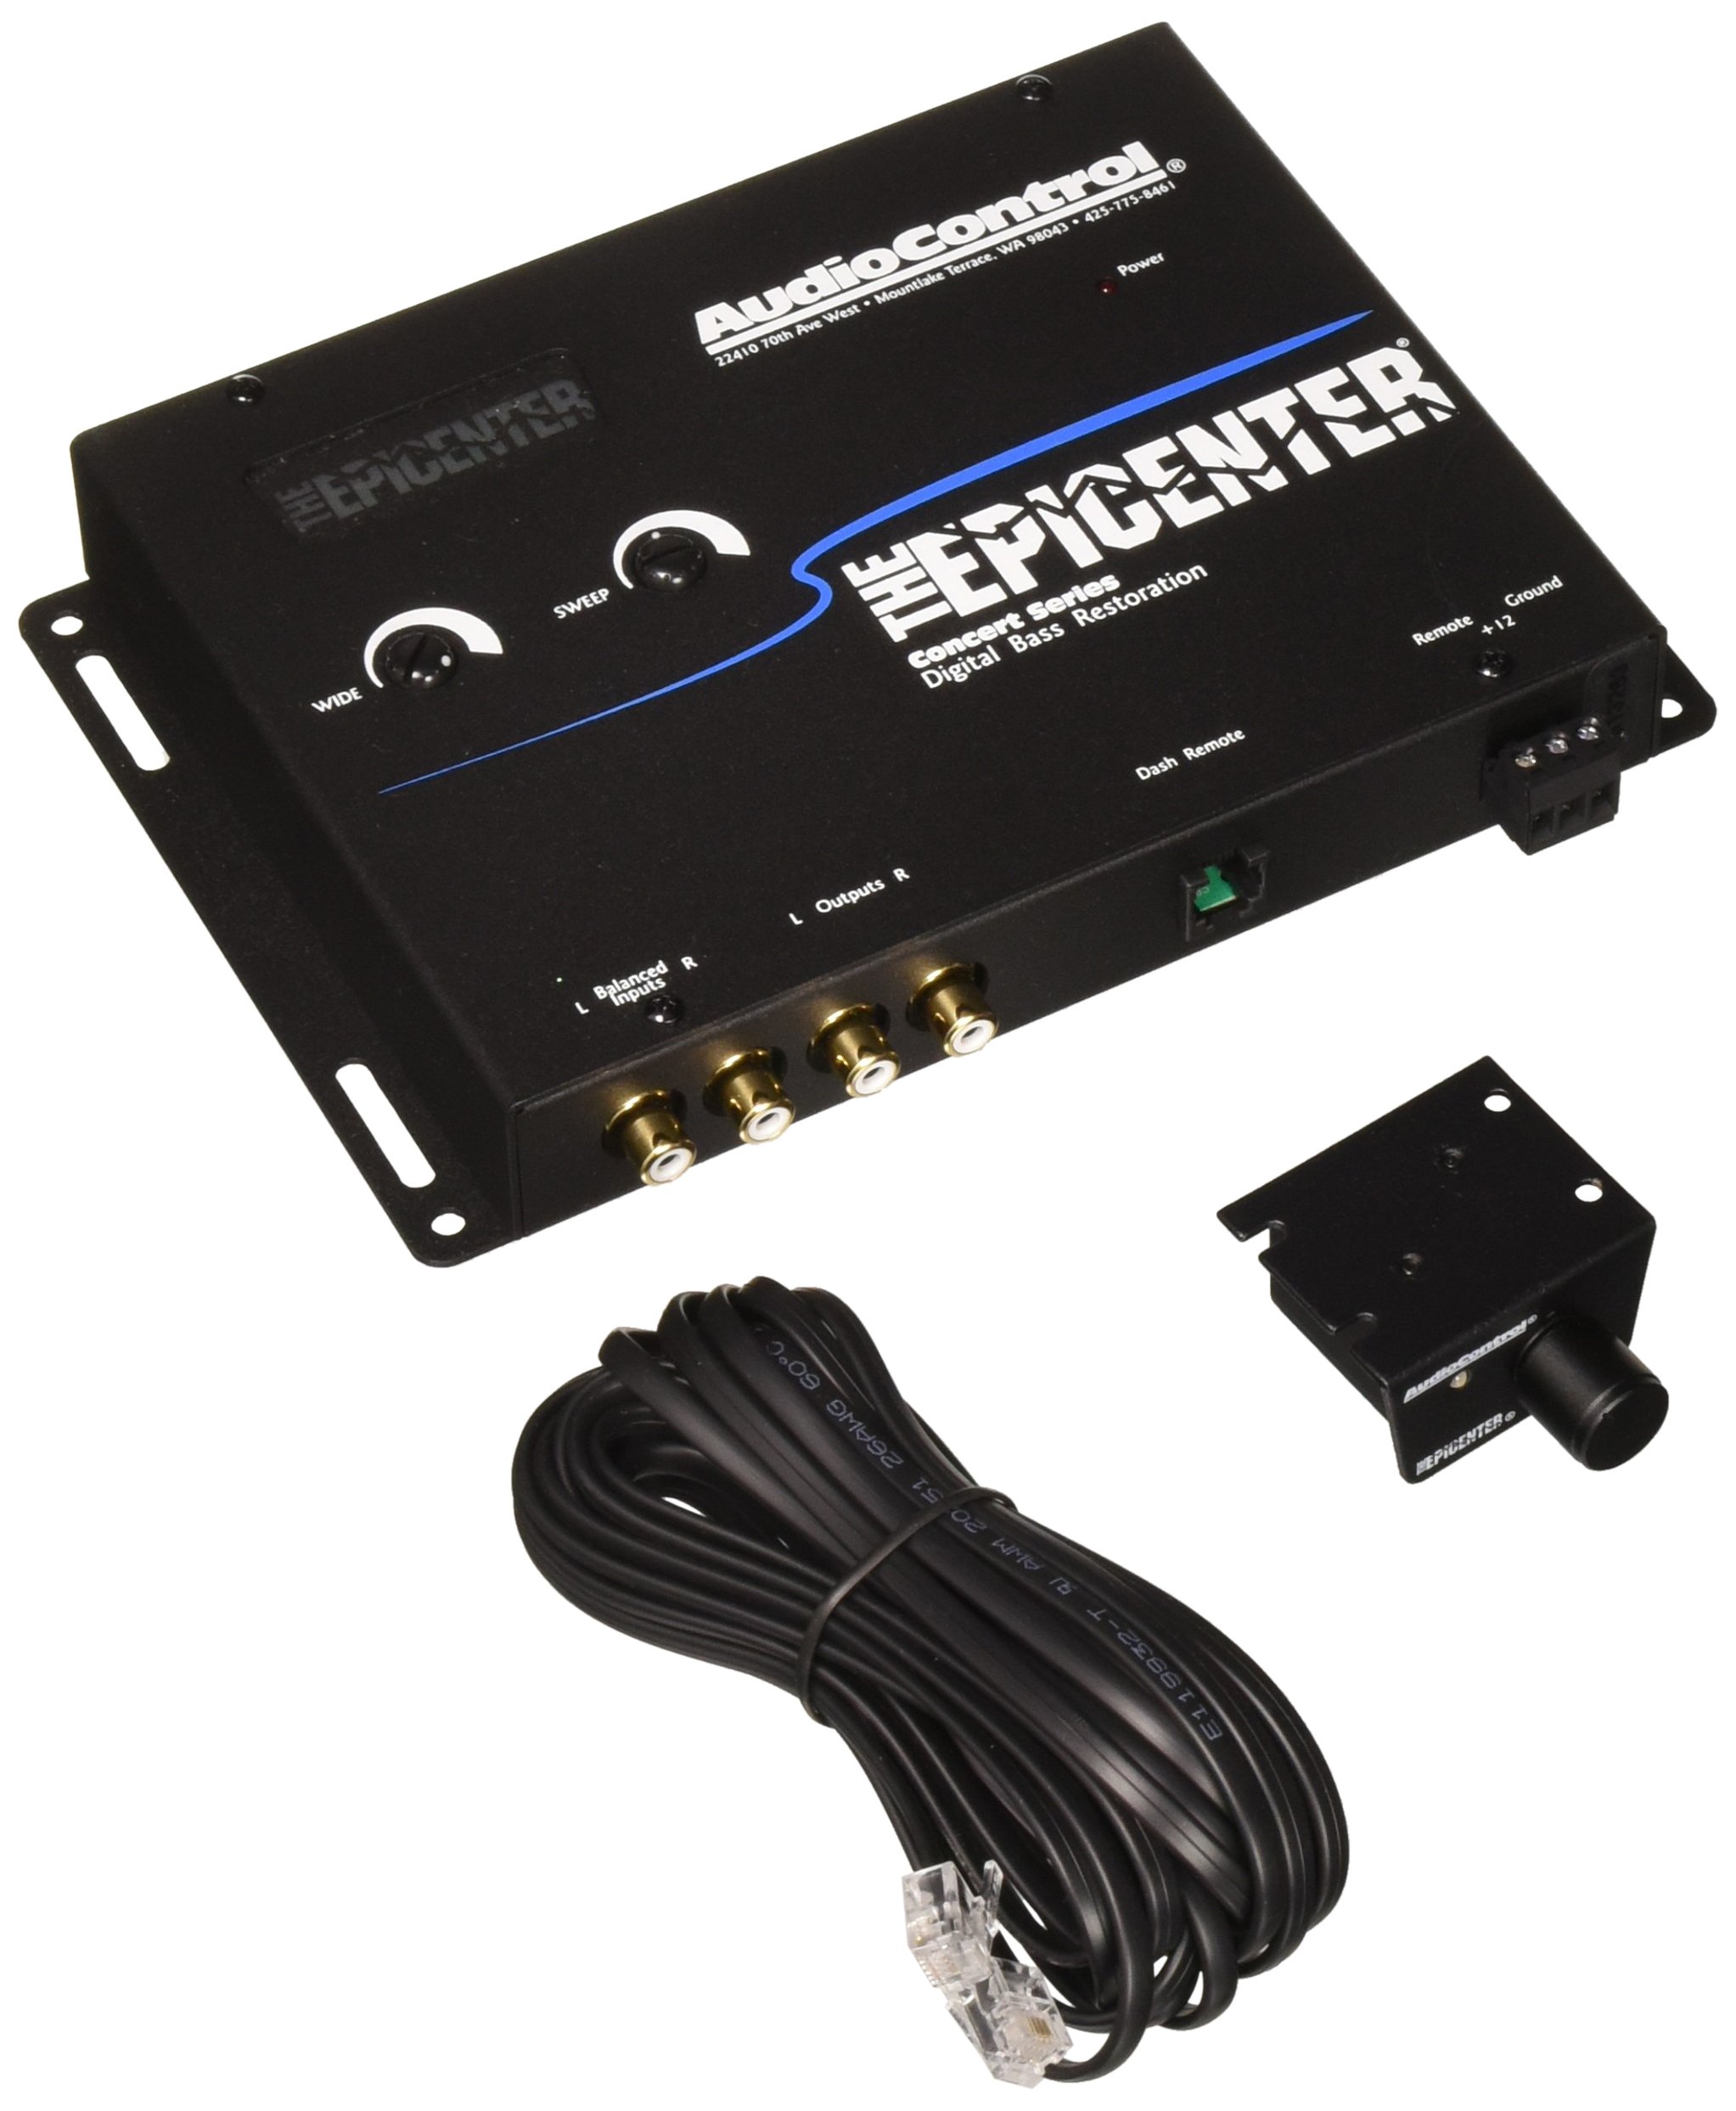 AudioControl Epicenter 低音助推器扩展器和带遥控功能的低音恢复处理器...